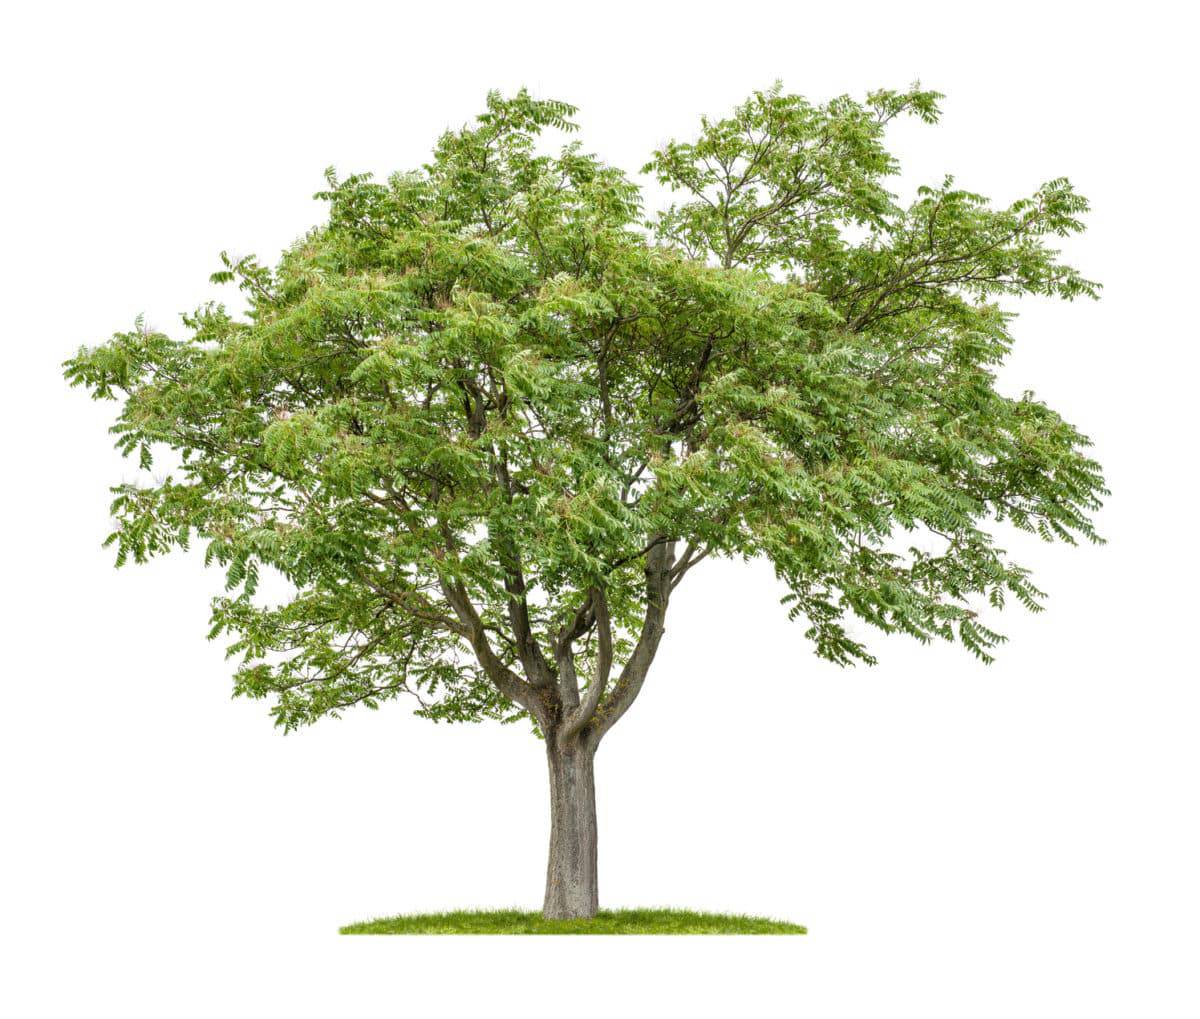 Götterbaum in der Natur. Aus der Pflanze wird das Globuli zur homöopathischen Behandlung hergestellt. Das Globuli Alianthus glandulosa wird in der Homöopathie bei Krankheiten wie Infektionskrankheiten, Kollaps und Schwäche eingesetzt. Fotolia © Zerbor